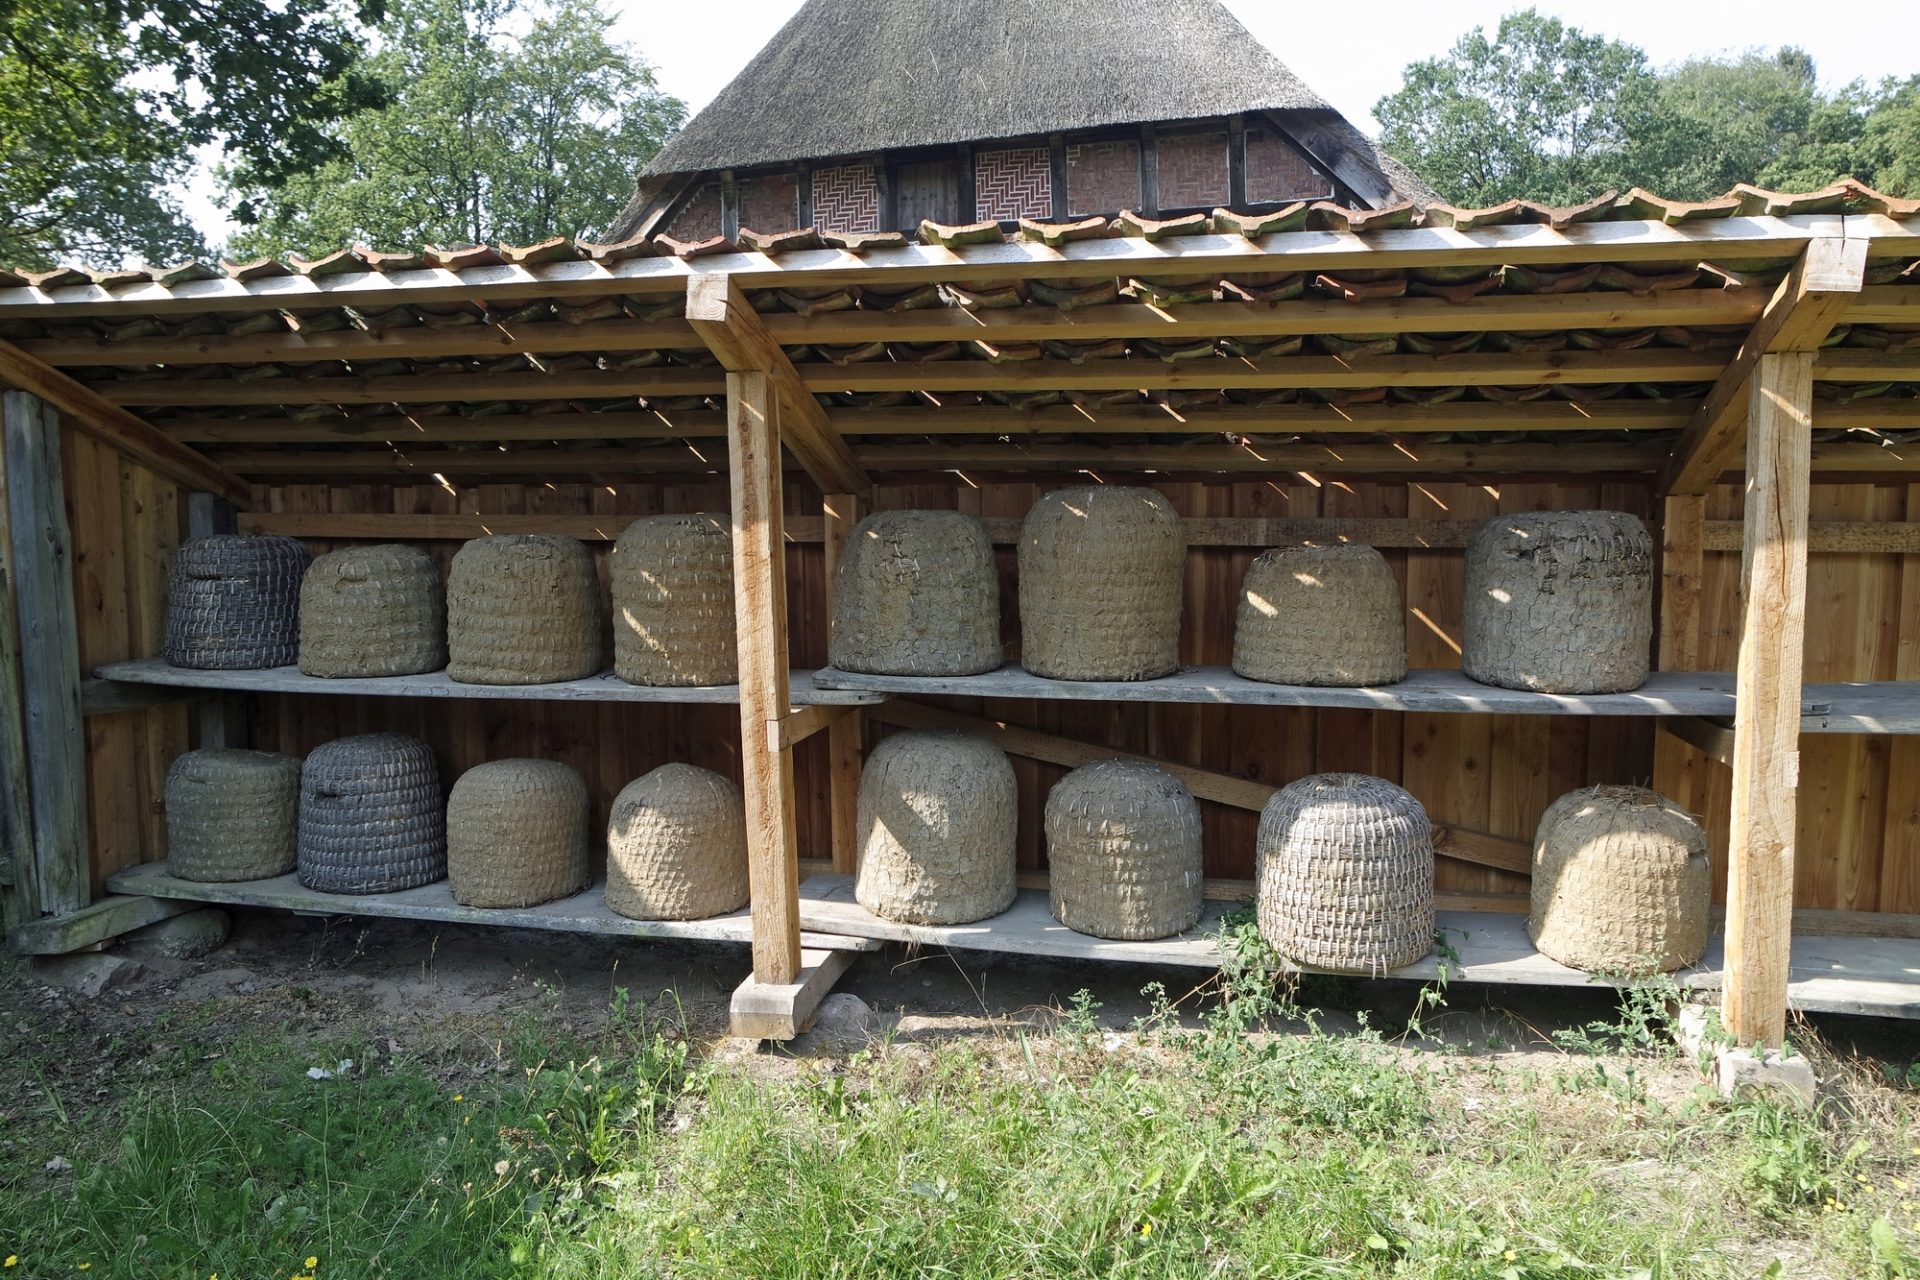 Medieval Beekeeping - Skep Beehives